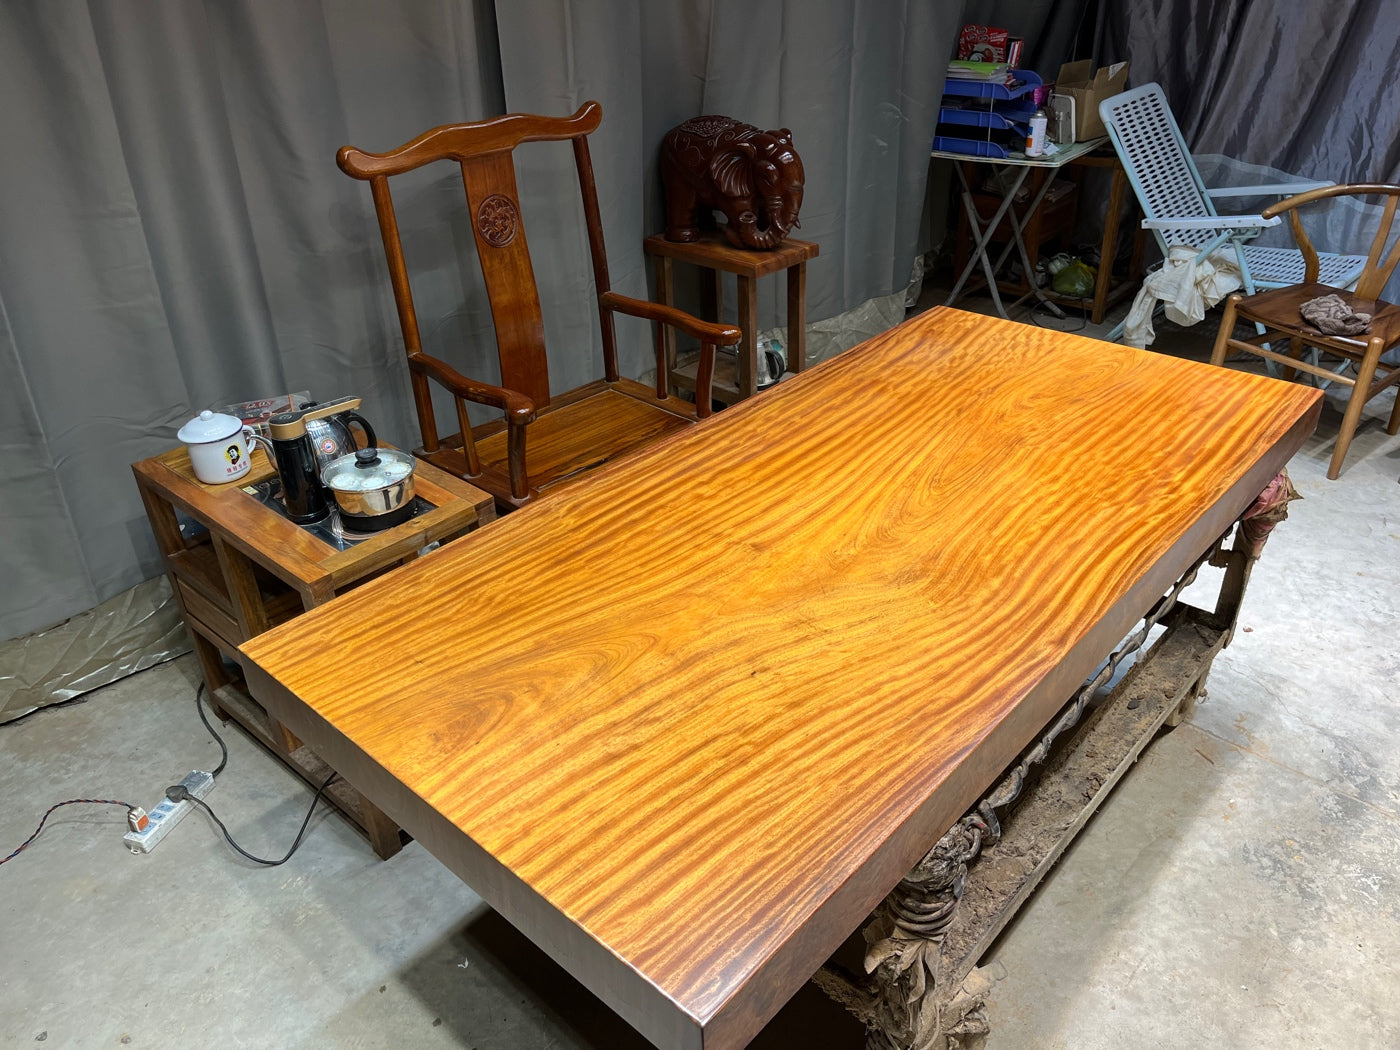 Tavolino da caffè con lastra di legno africano, <tc>Tali wood</tc>tavolo con lastra, lastre con bordo vivo per tavoli